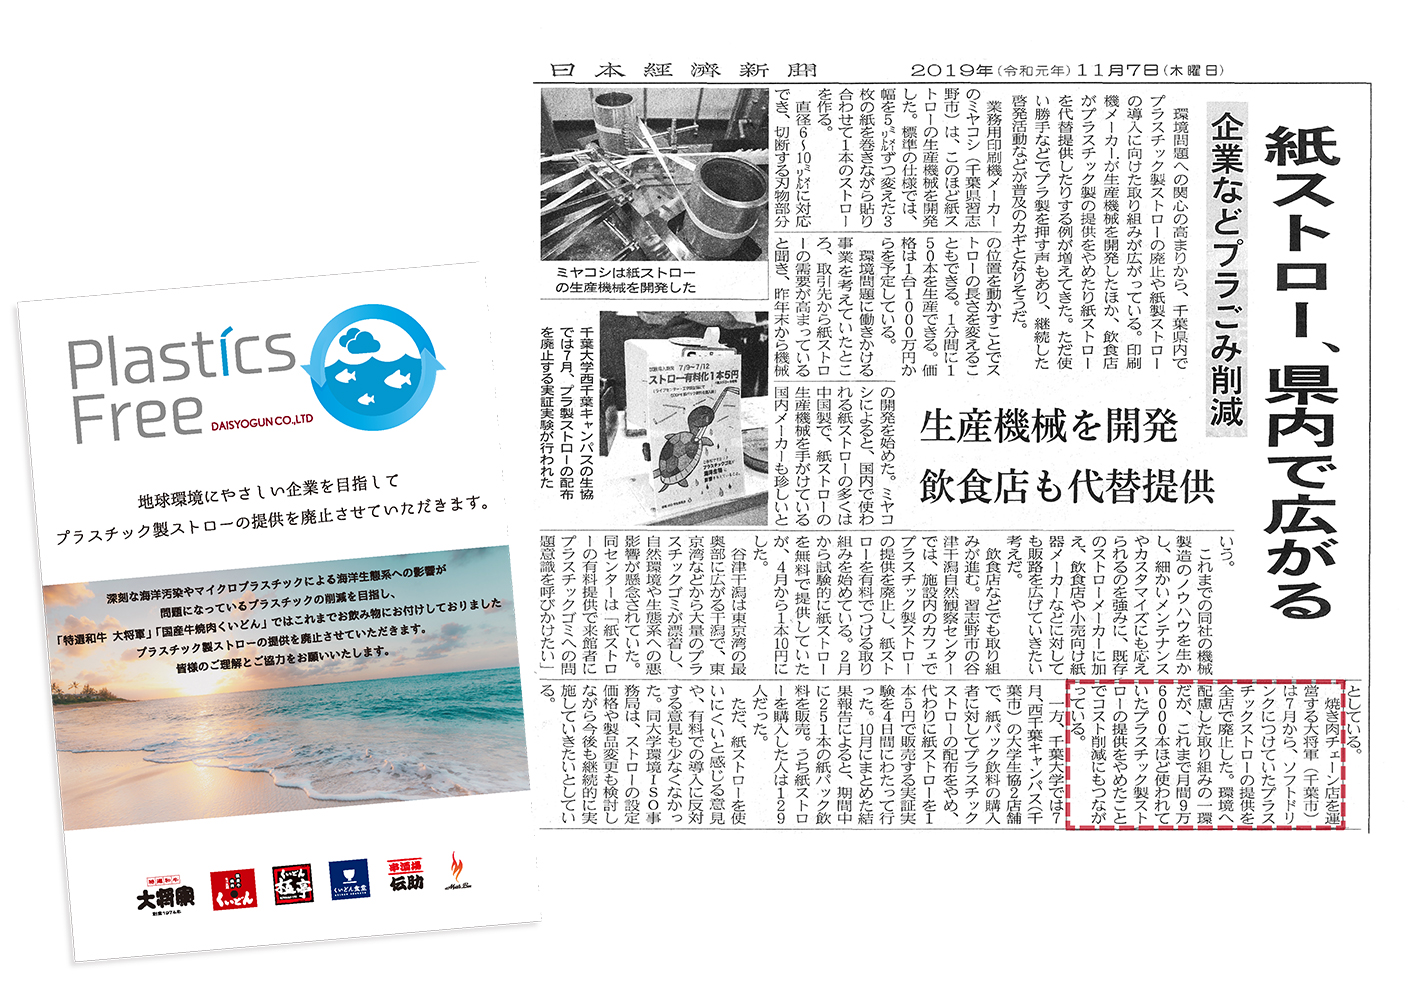 Plastics Free の取組みが日本経済新聞に掲載されました。